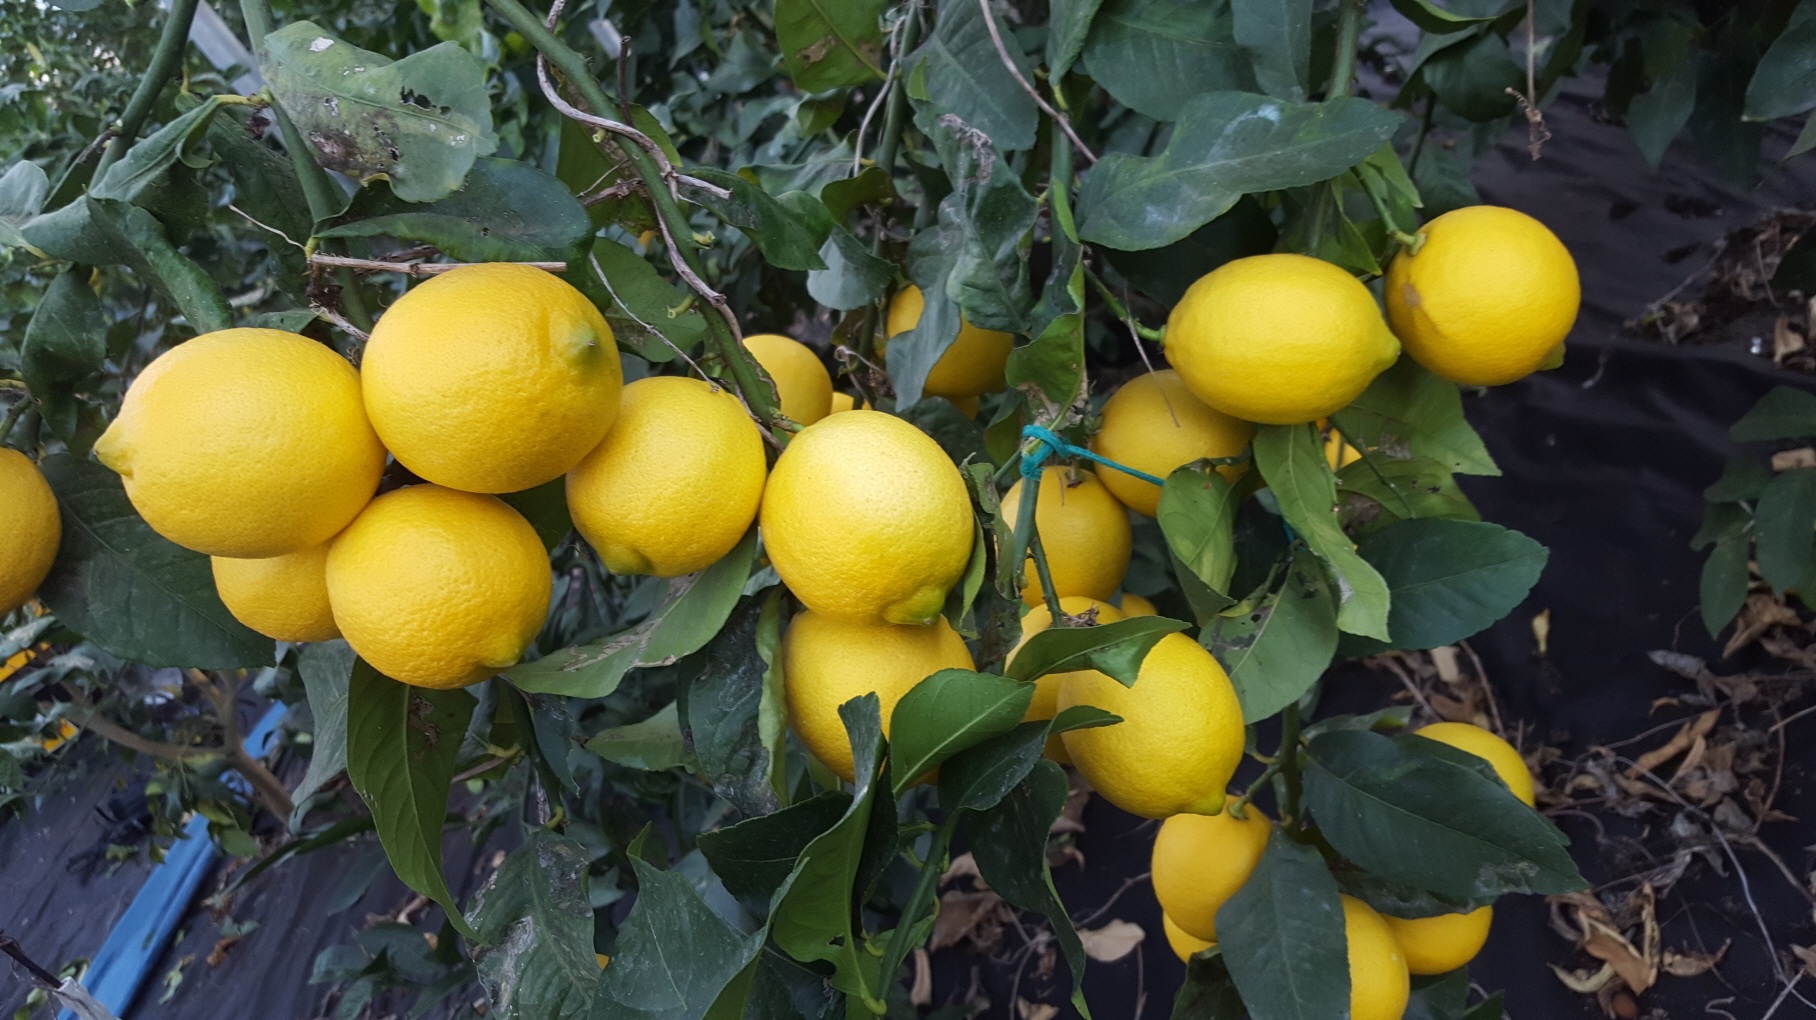 레몬 9kg - 무농약인증 레몬